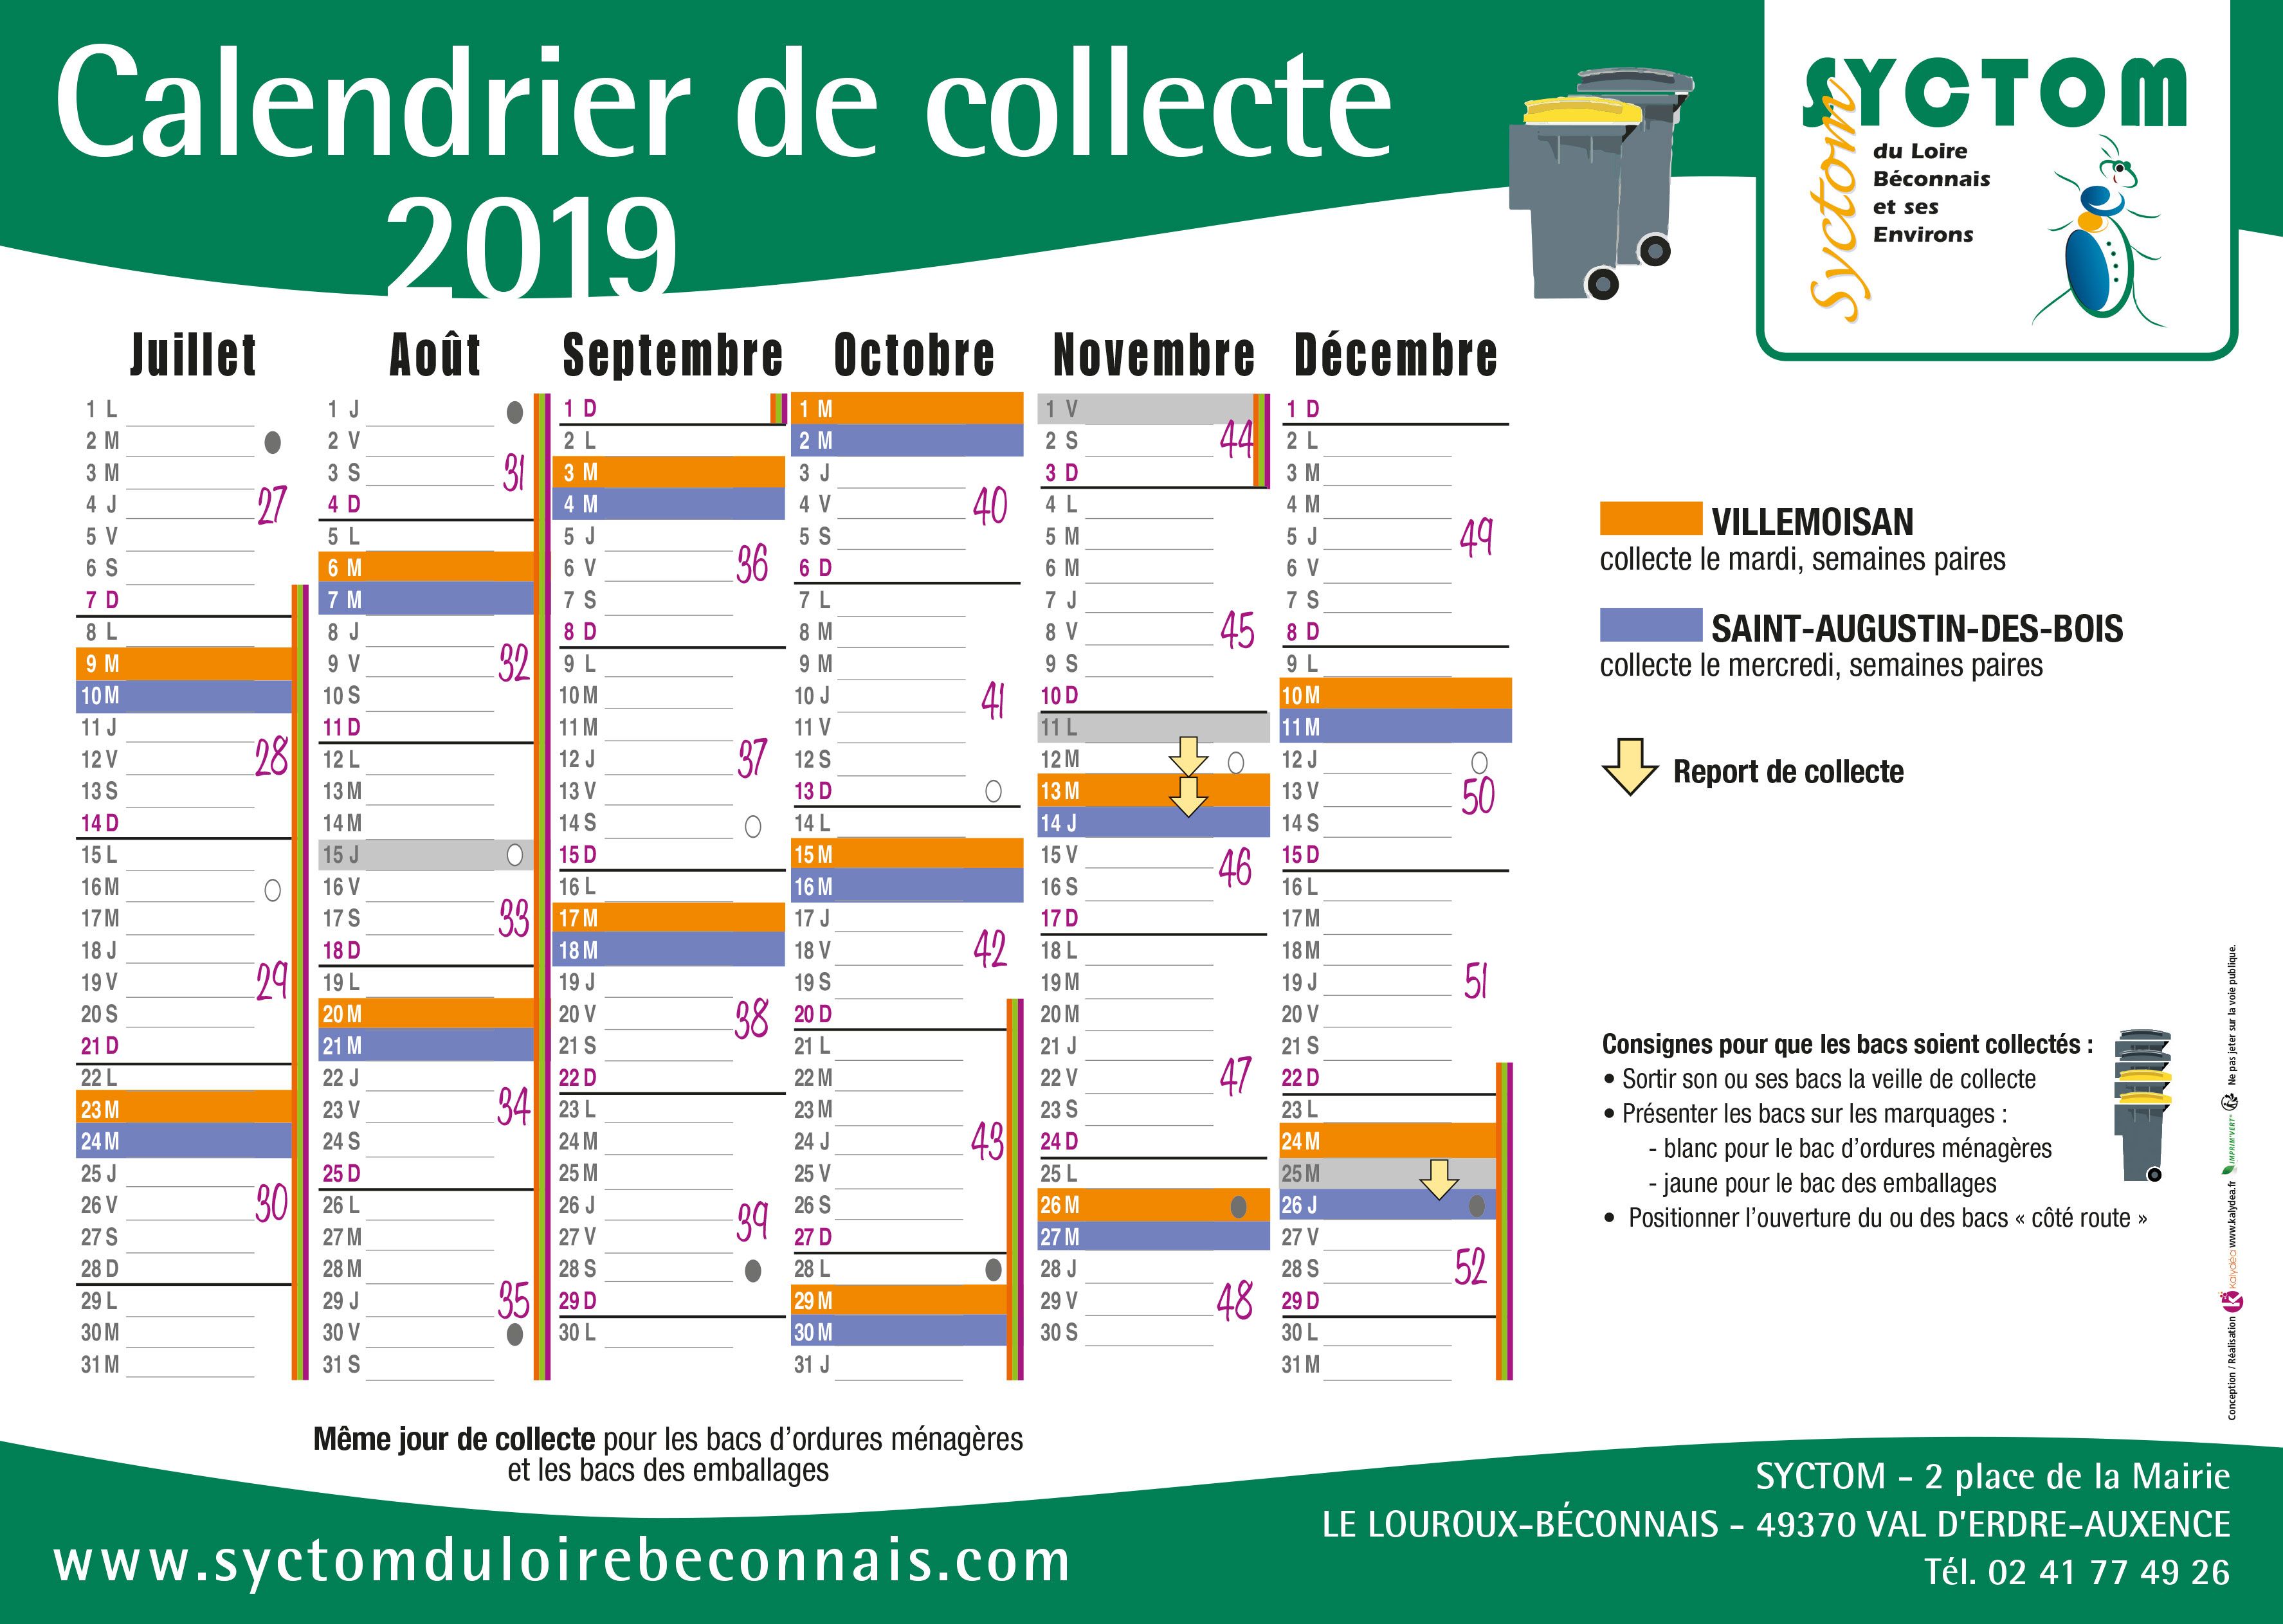 Les calendriers de collecte 2019